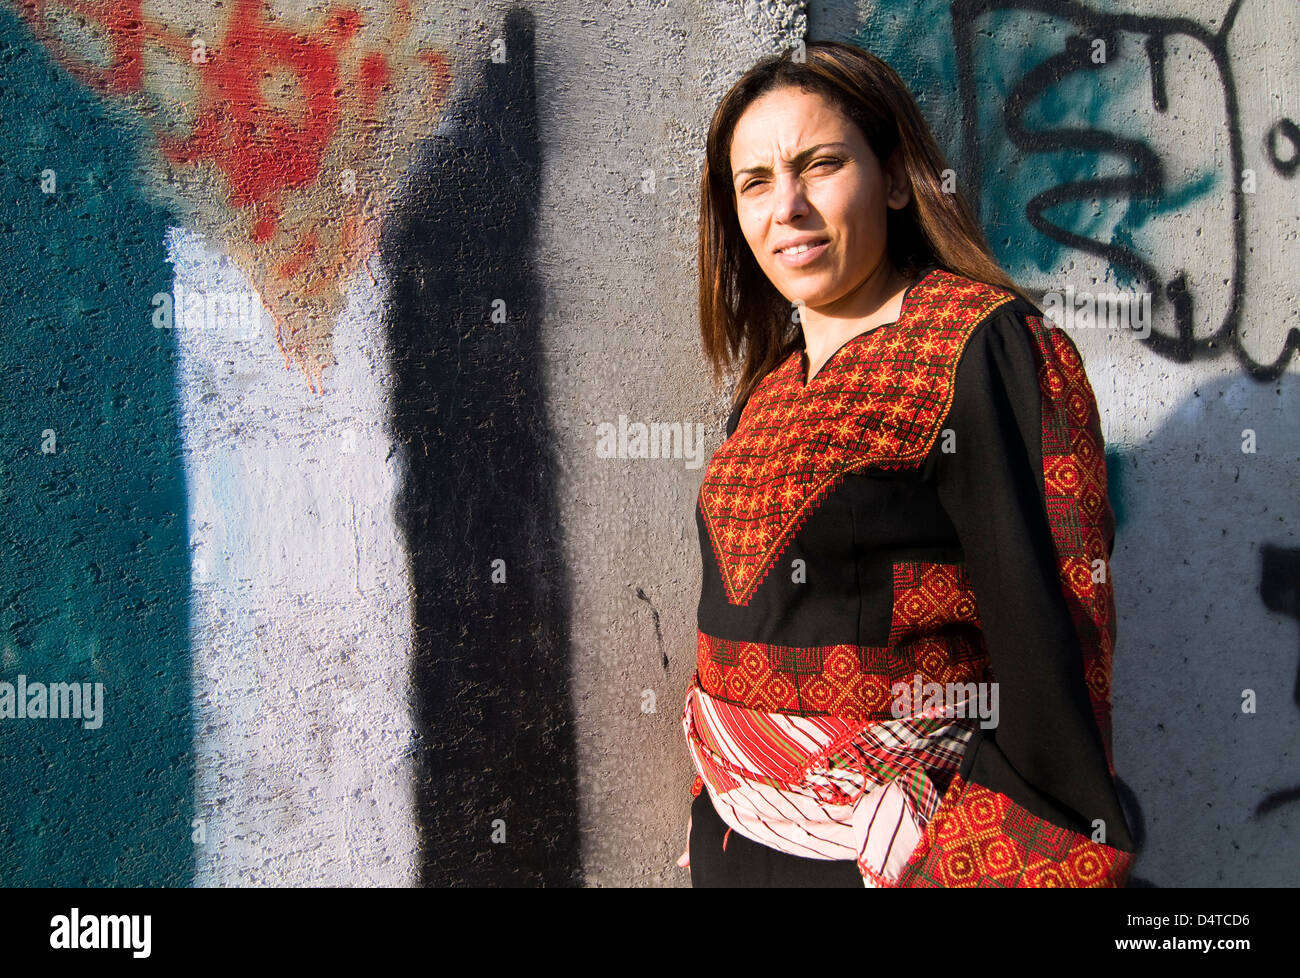 Una mujer palestina orgullosa por la barrera permanente construido por el gobierno israelí. Arte y graffiti decoran este muro de hormigón. Foto de stock